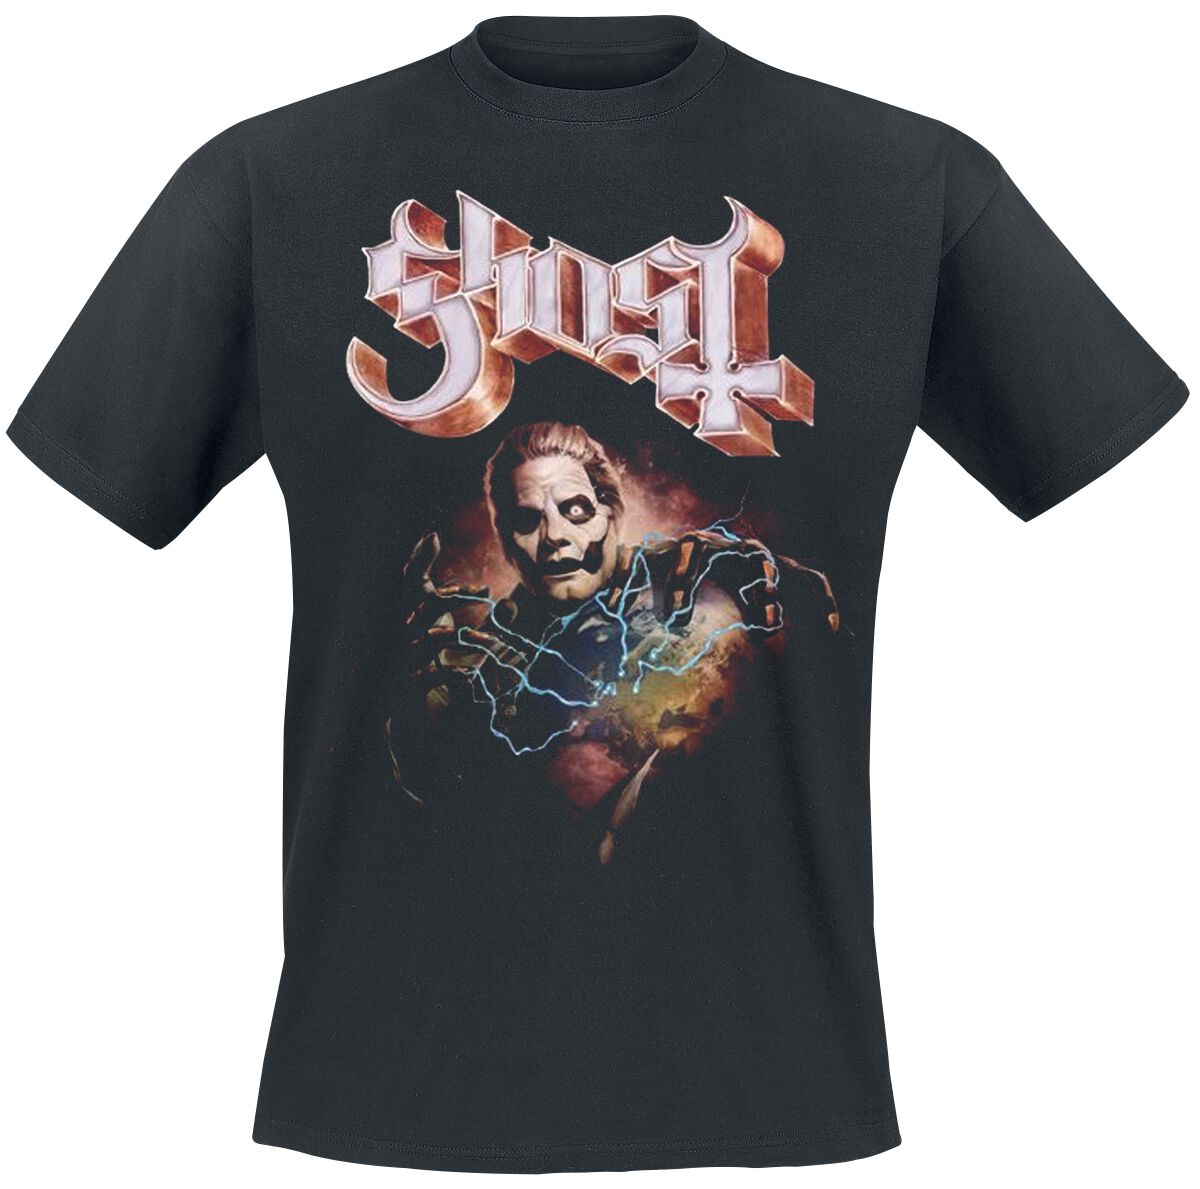 Ghost T-Shirt - Europe 23 Admat Tour Shirt - S bis 4XL - für Männer - Größe XXL - schwarz  - Lizenziertes Merchandise!